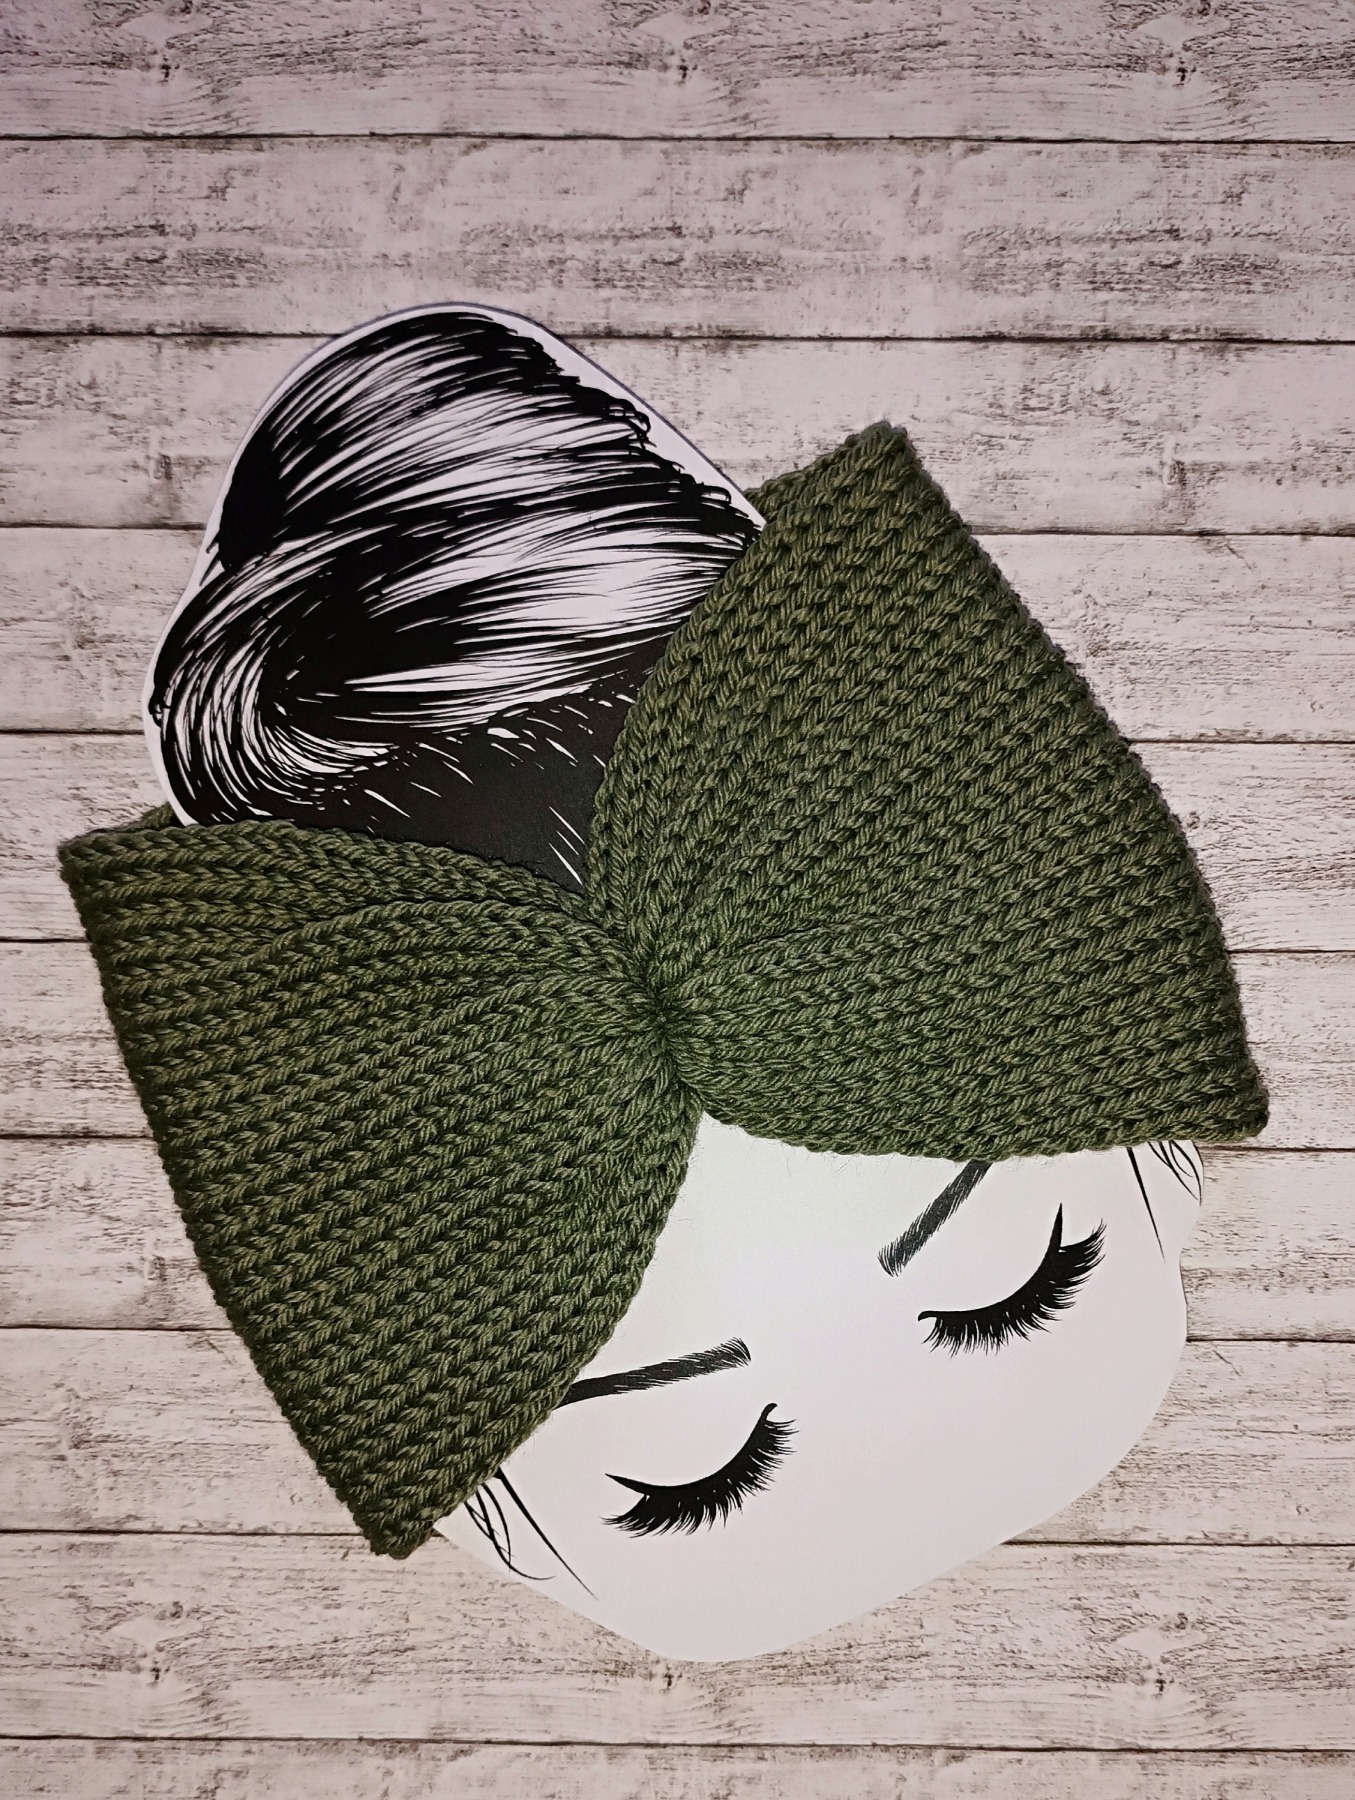 Damen - Stirnband gestrickt - passend für Kopfumfang 52-60 cm grün